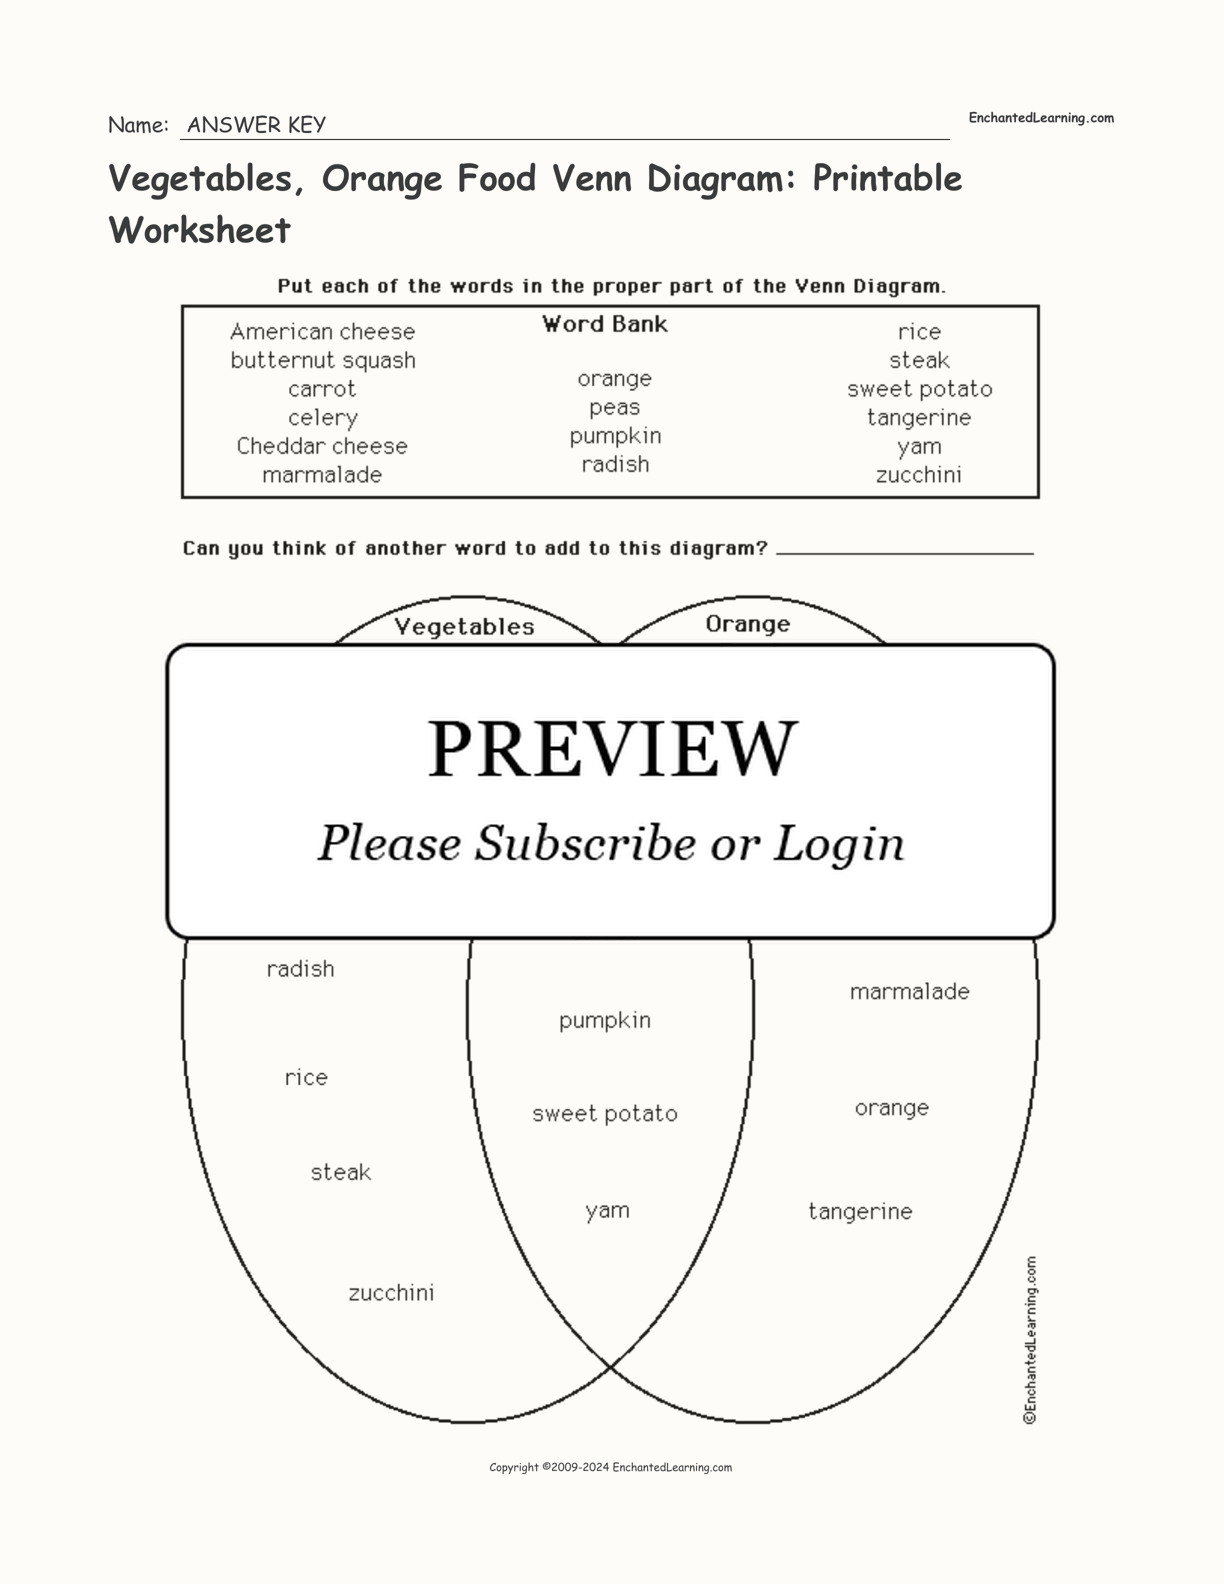 Vegetables, Orange Food Venn Diagram: Printable Worksheet interactive worksheet page 2